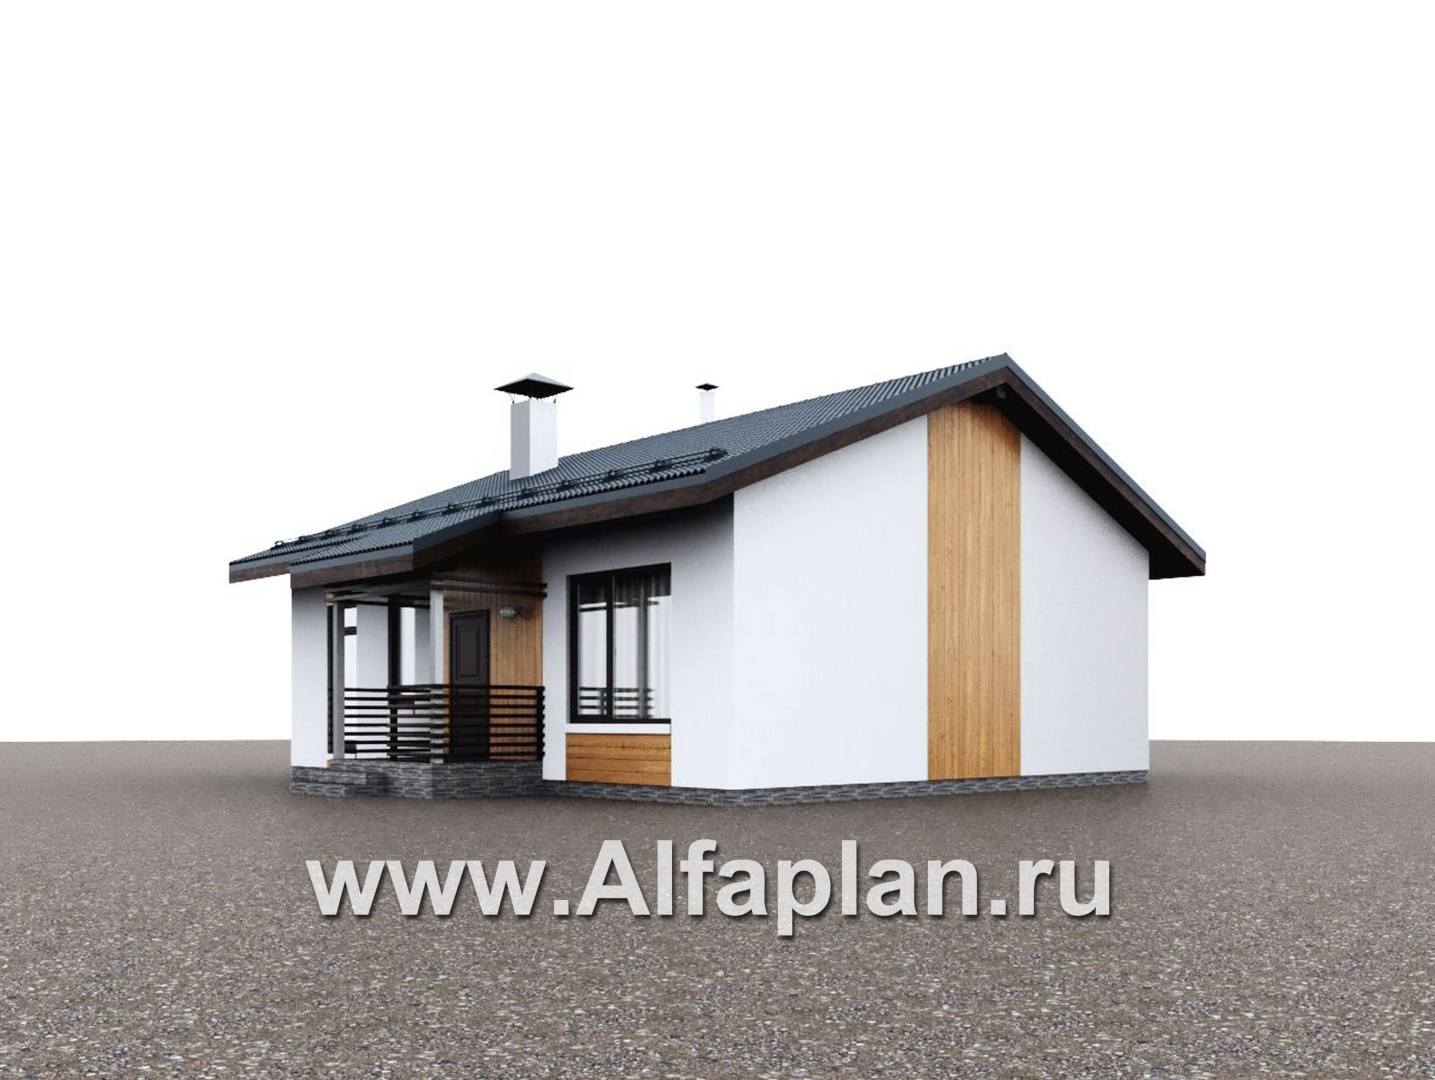 Проекты домов Альфаплан - "Литен" - проект простого одноэтажного дома с комфортной планировкой - дополнительное изображение №1